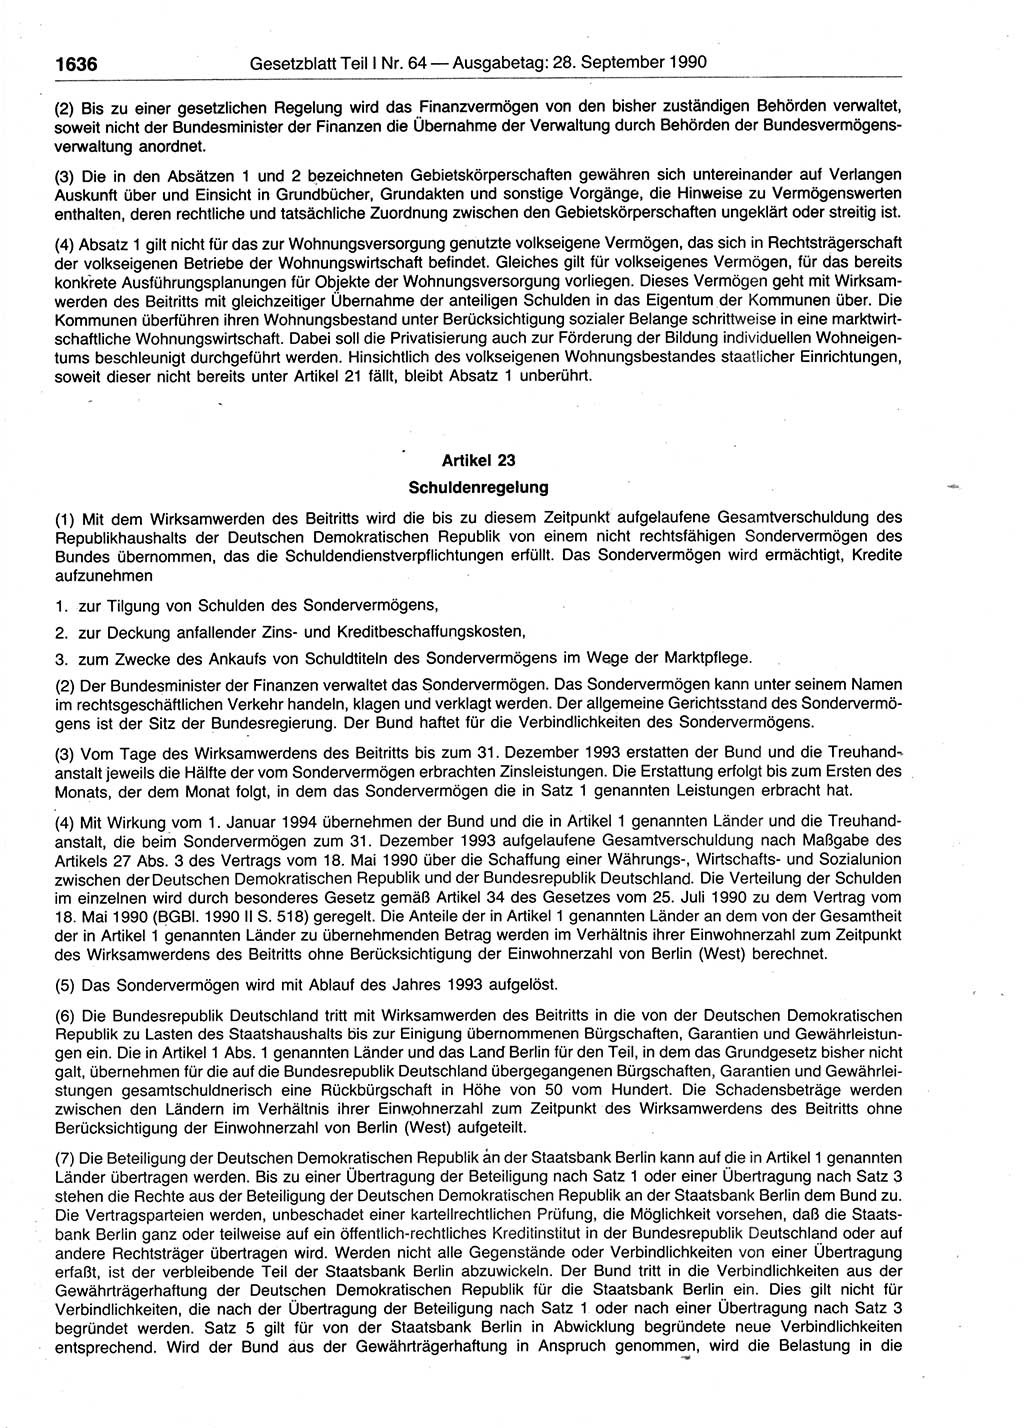 Gesetzblatt (GBl.) der Deutschen Demokratischen Republik (DDR) Teil Ⅰ 1990, Seite 1636 (GBl. DDR Ⅰ 1990, S. 1636)